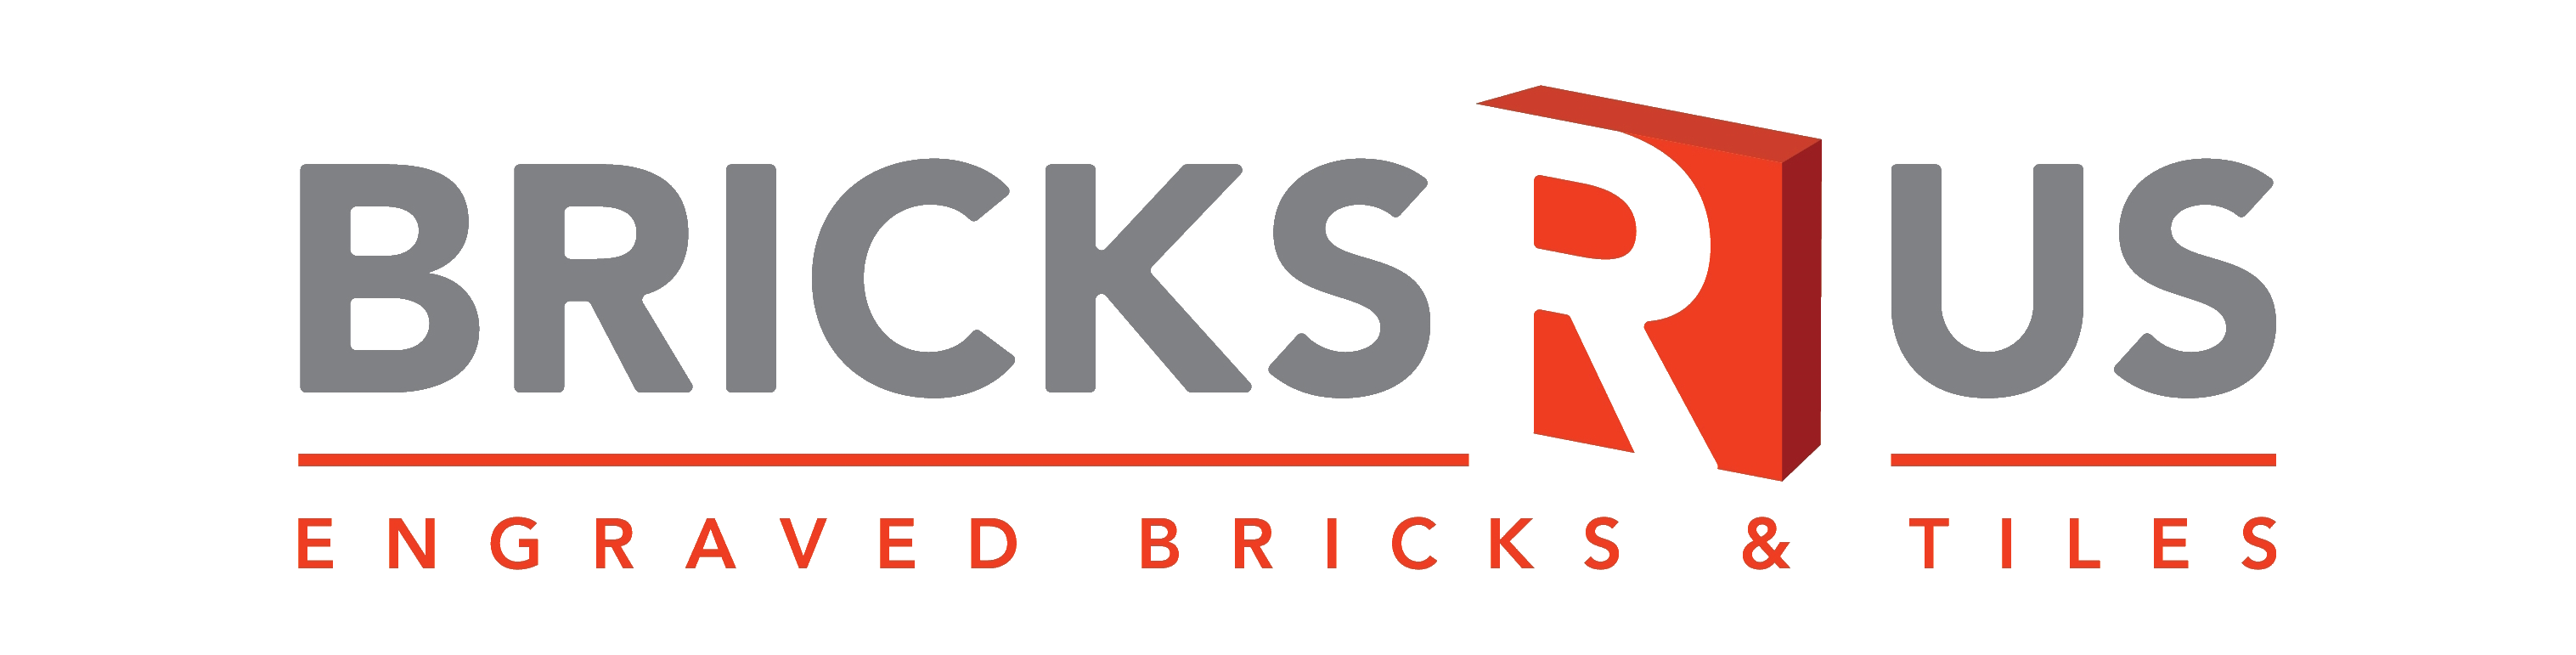 Bricks R Us Logo